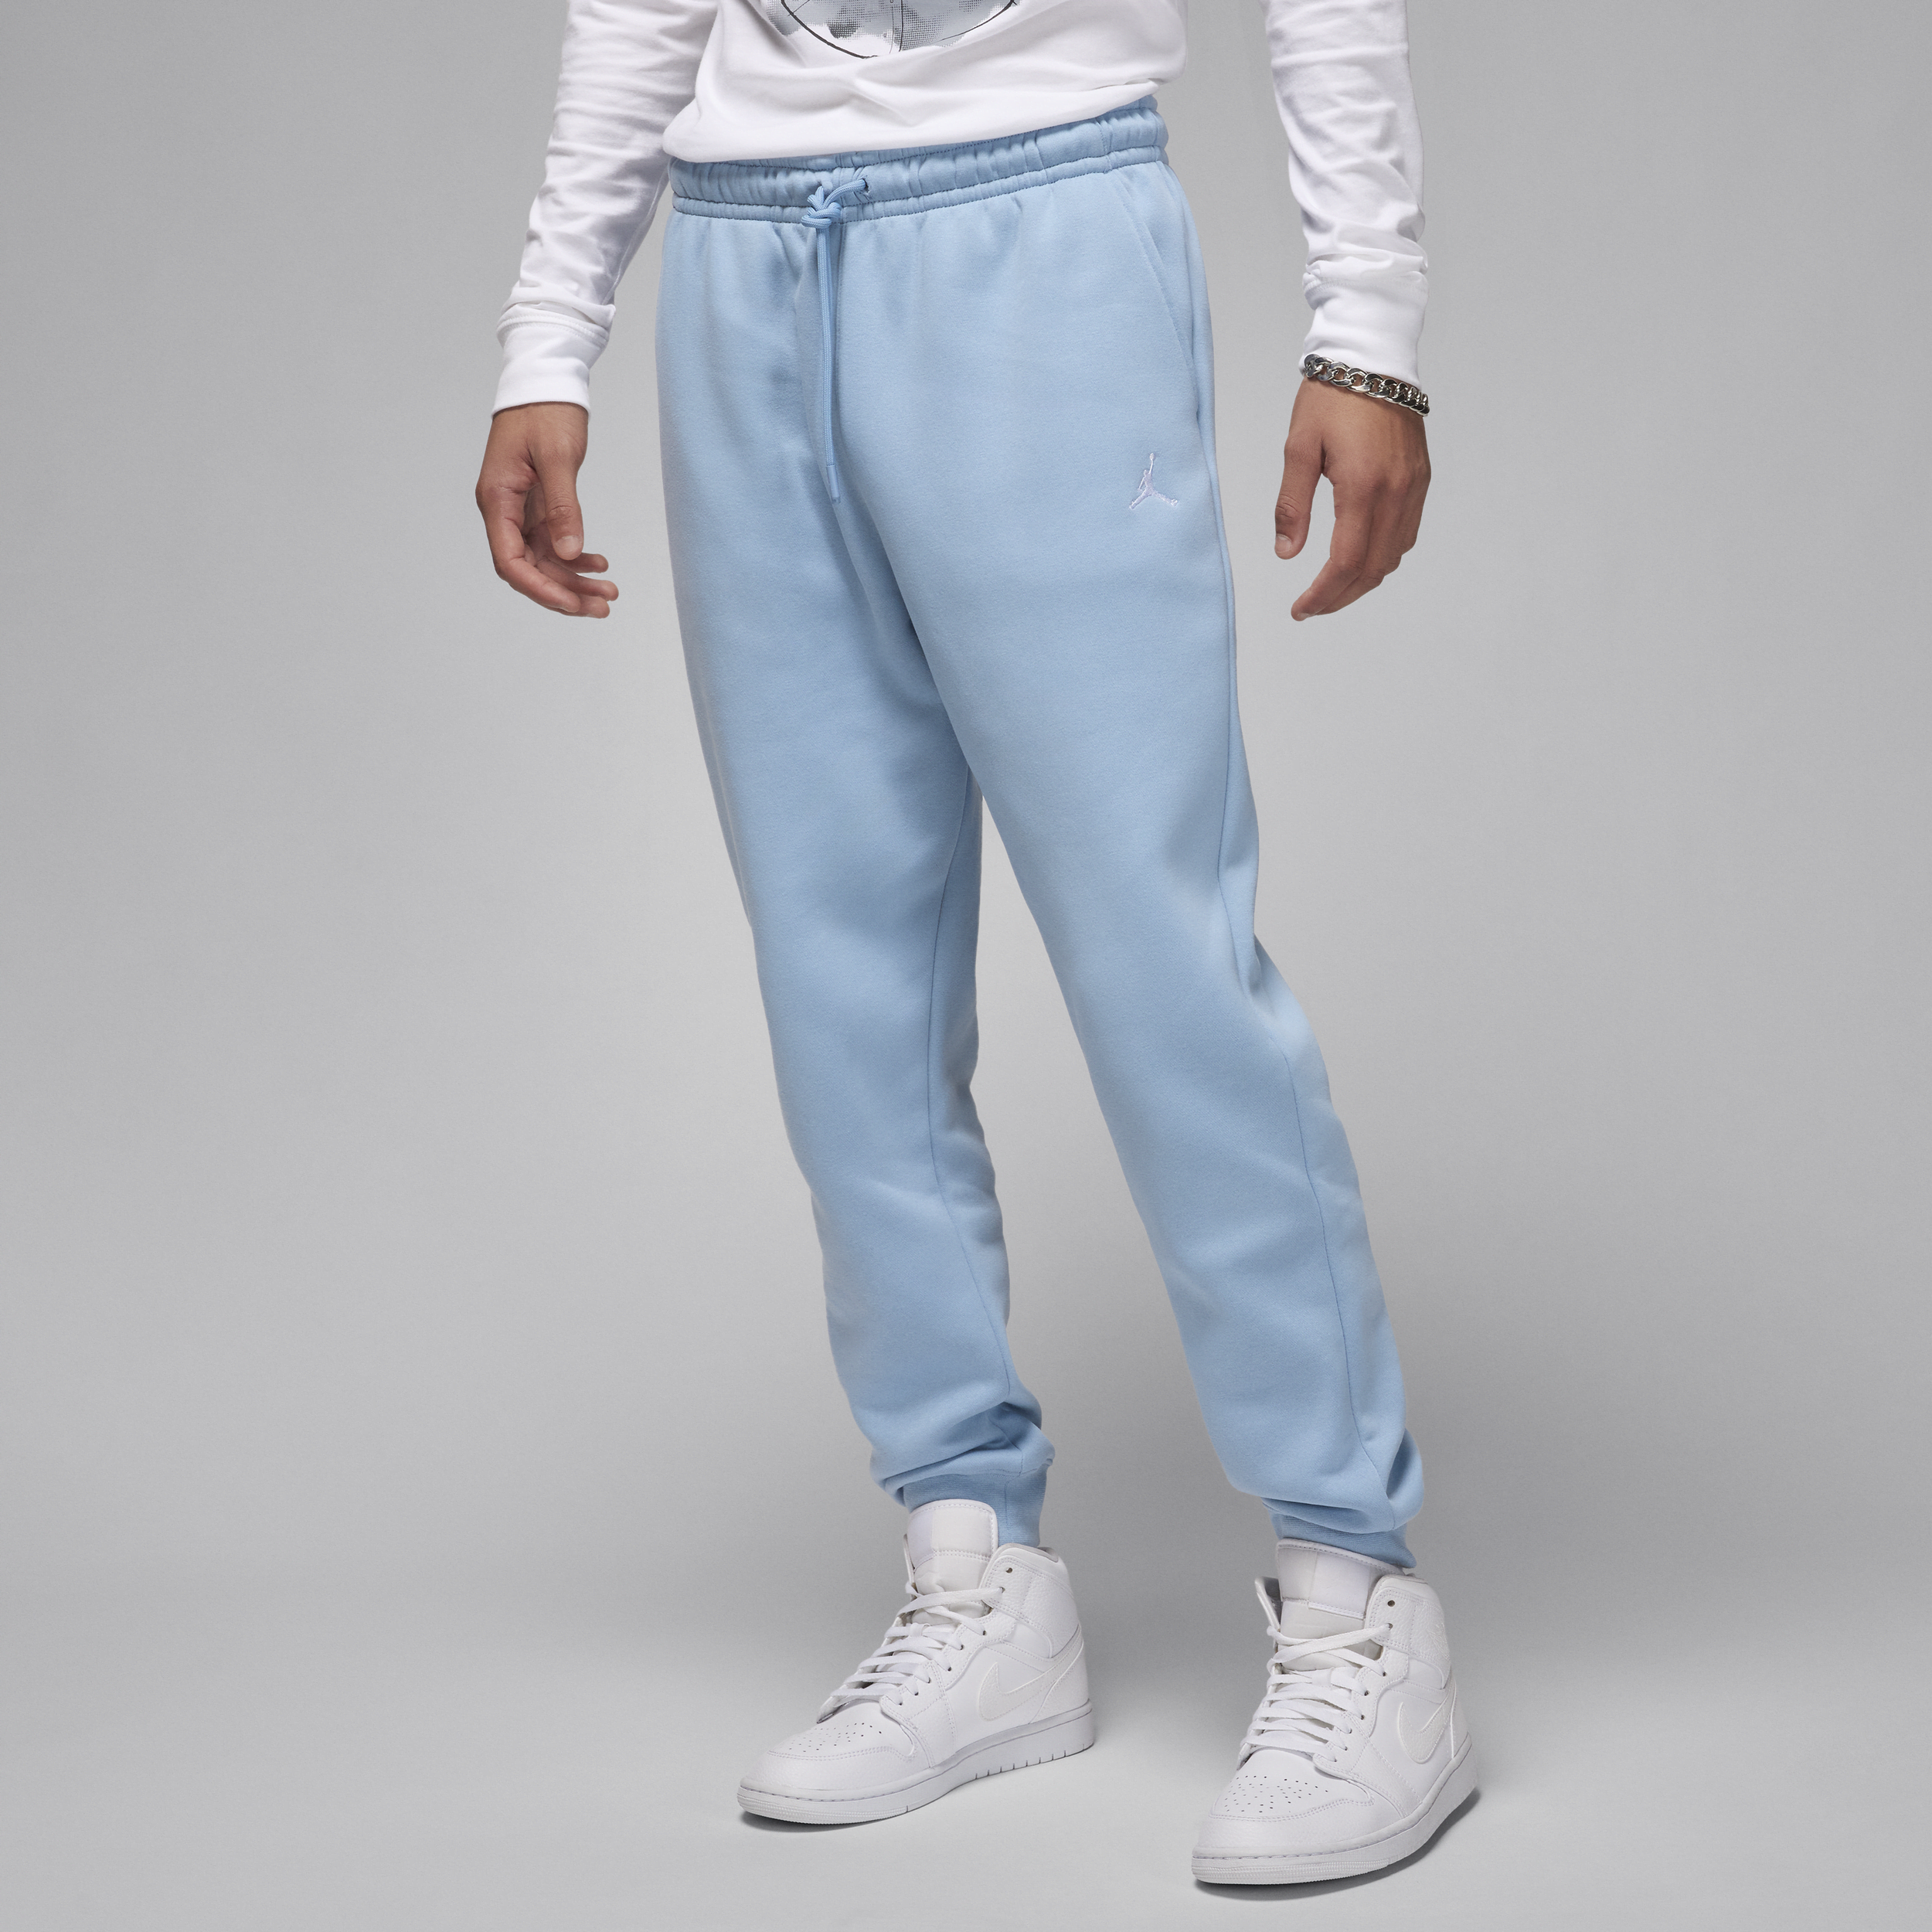 Jordan Brooklyn Fleece joggingbroek voor heren - Blauw